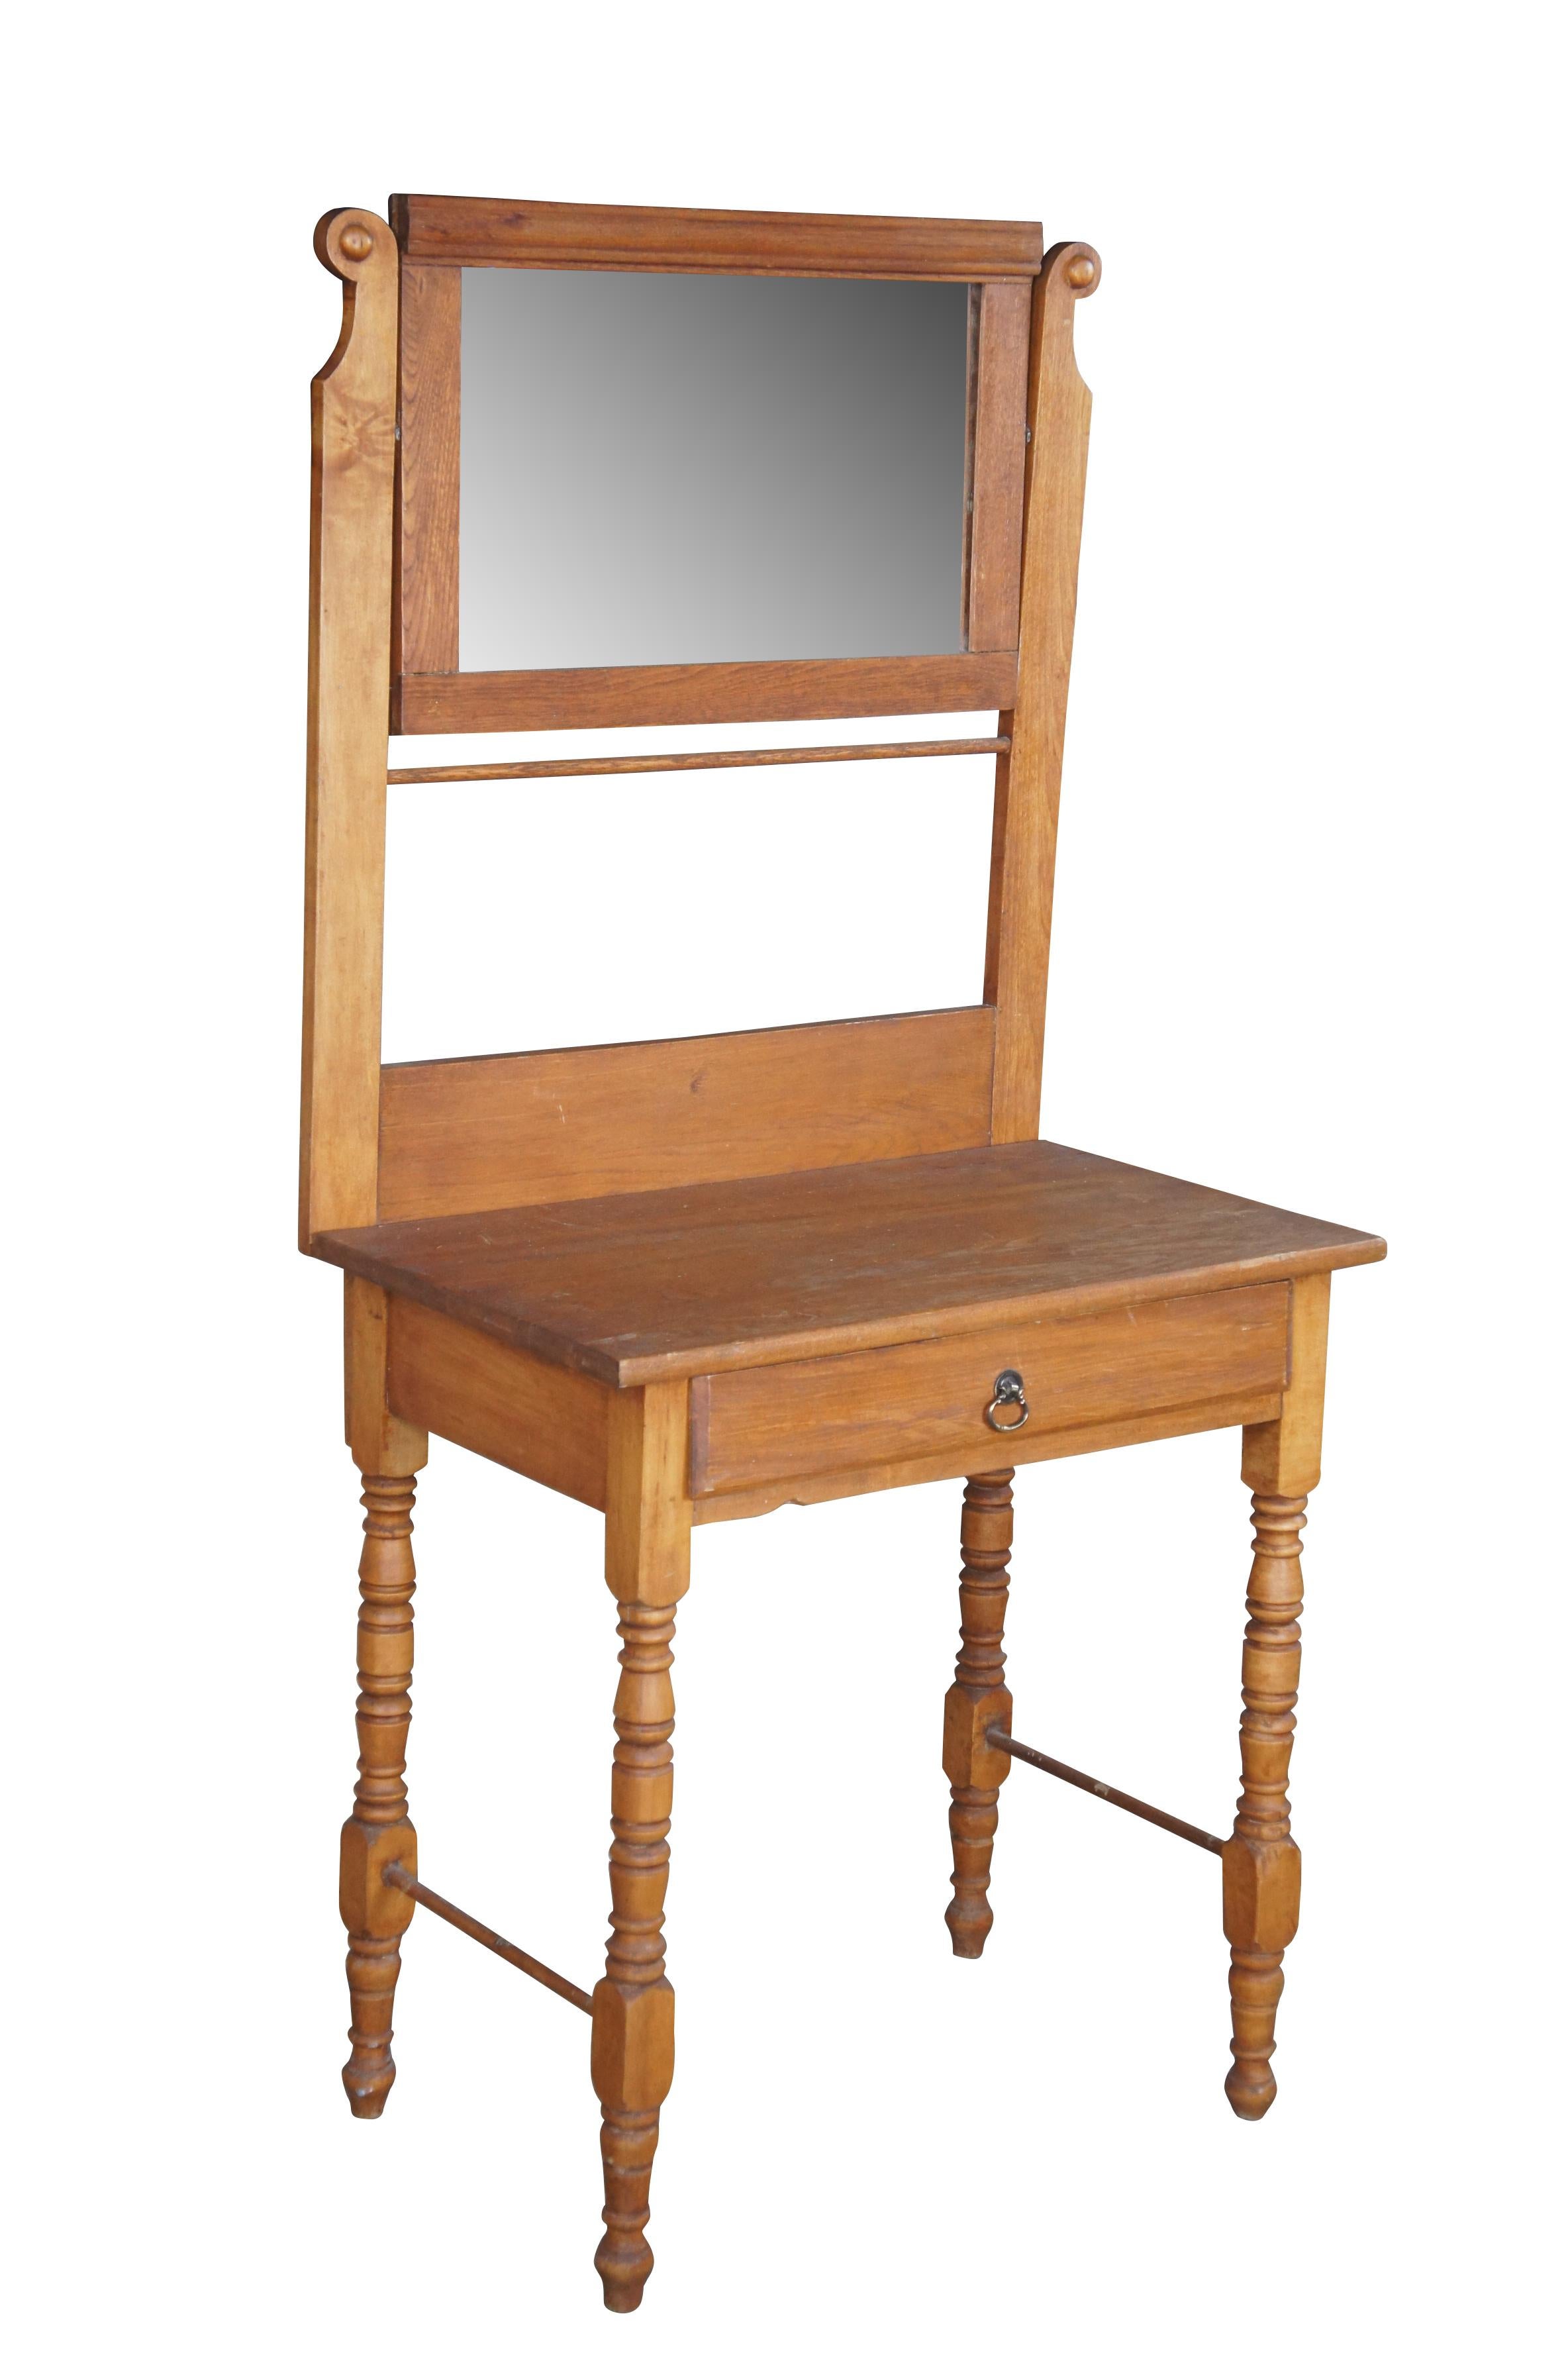 Ein malerischer spätviktorianischer Waschtisch, um 1900.  Aus Eichenholz, mit hoher Rückenlehne, drehbarem Spiegel und Handtuchhalter.  Der Sockel hat eine Innenablage mit Messinggriff und wird von gedrechselten Beinen getragen.

Abmessungen:
57 